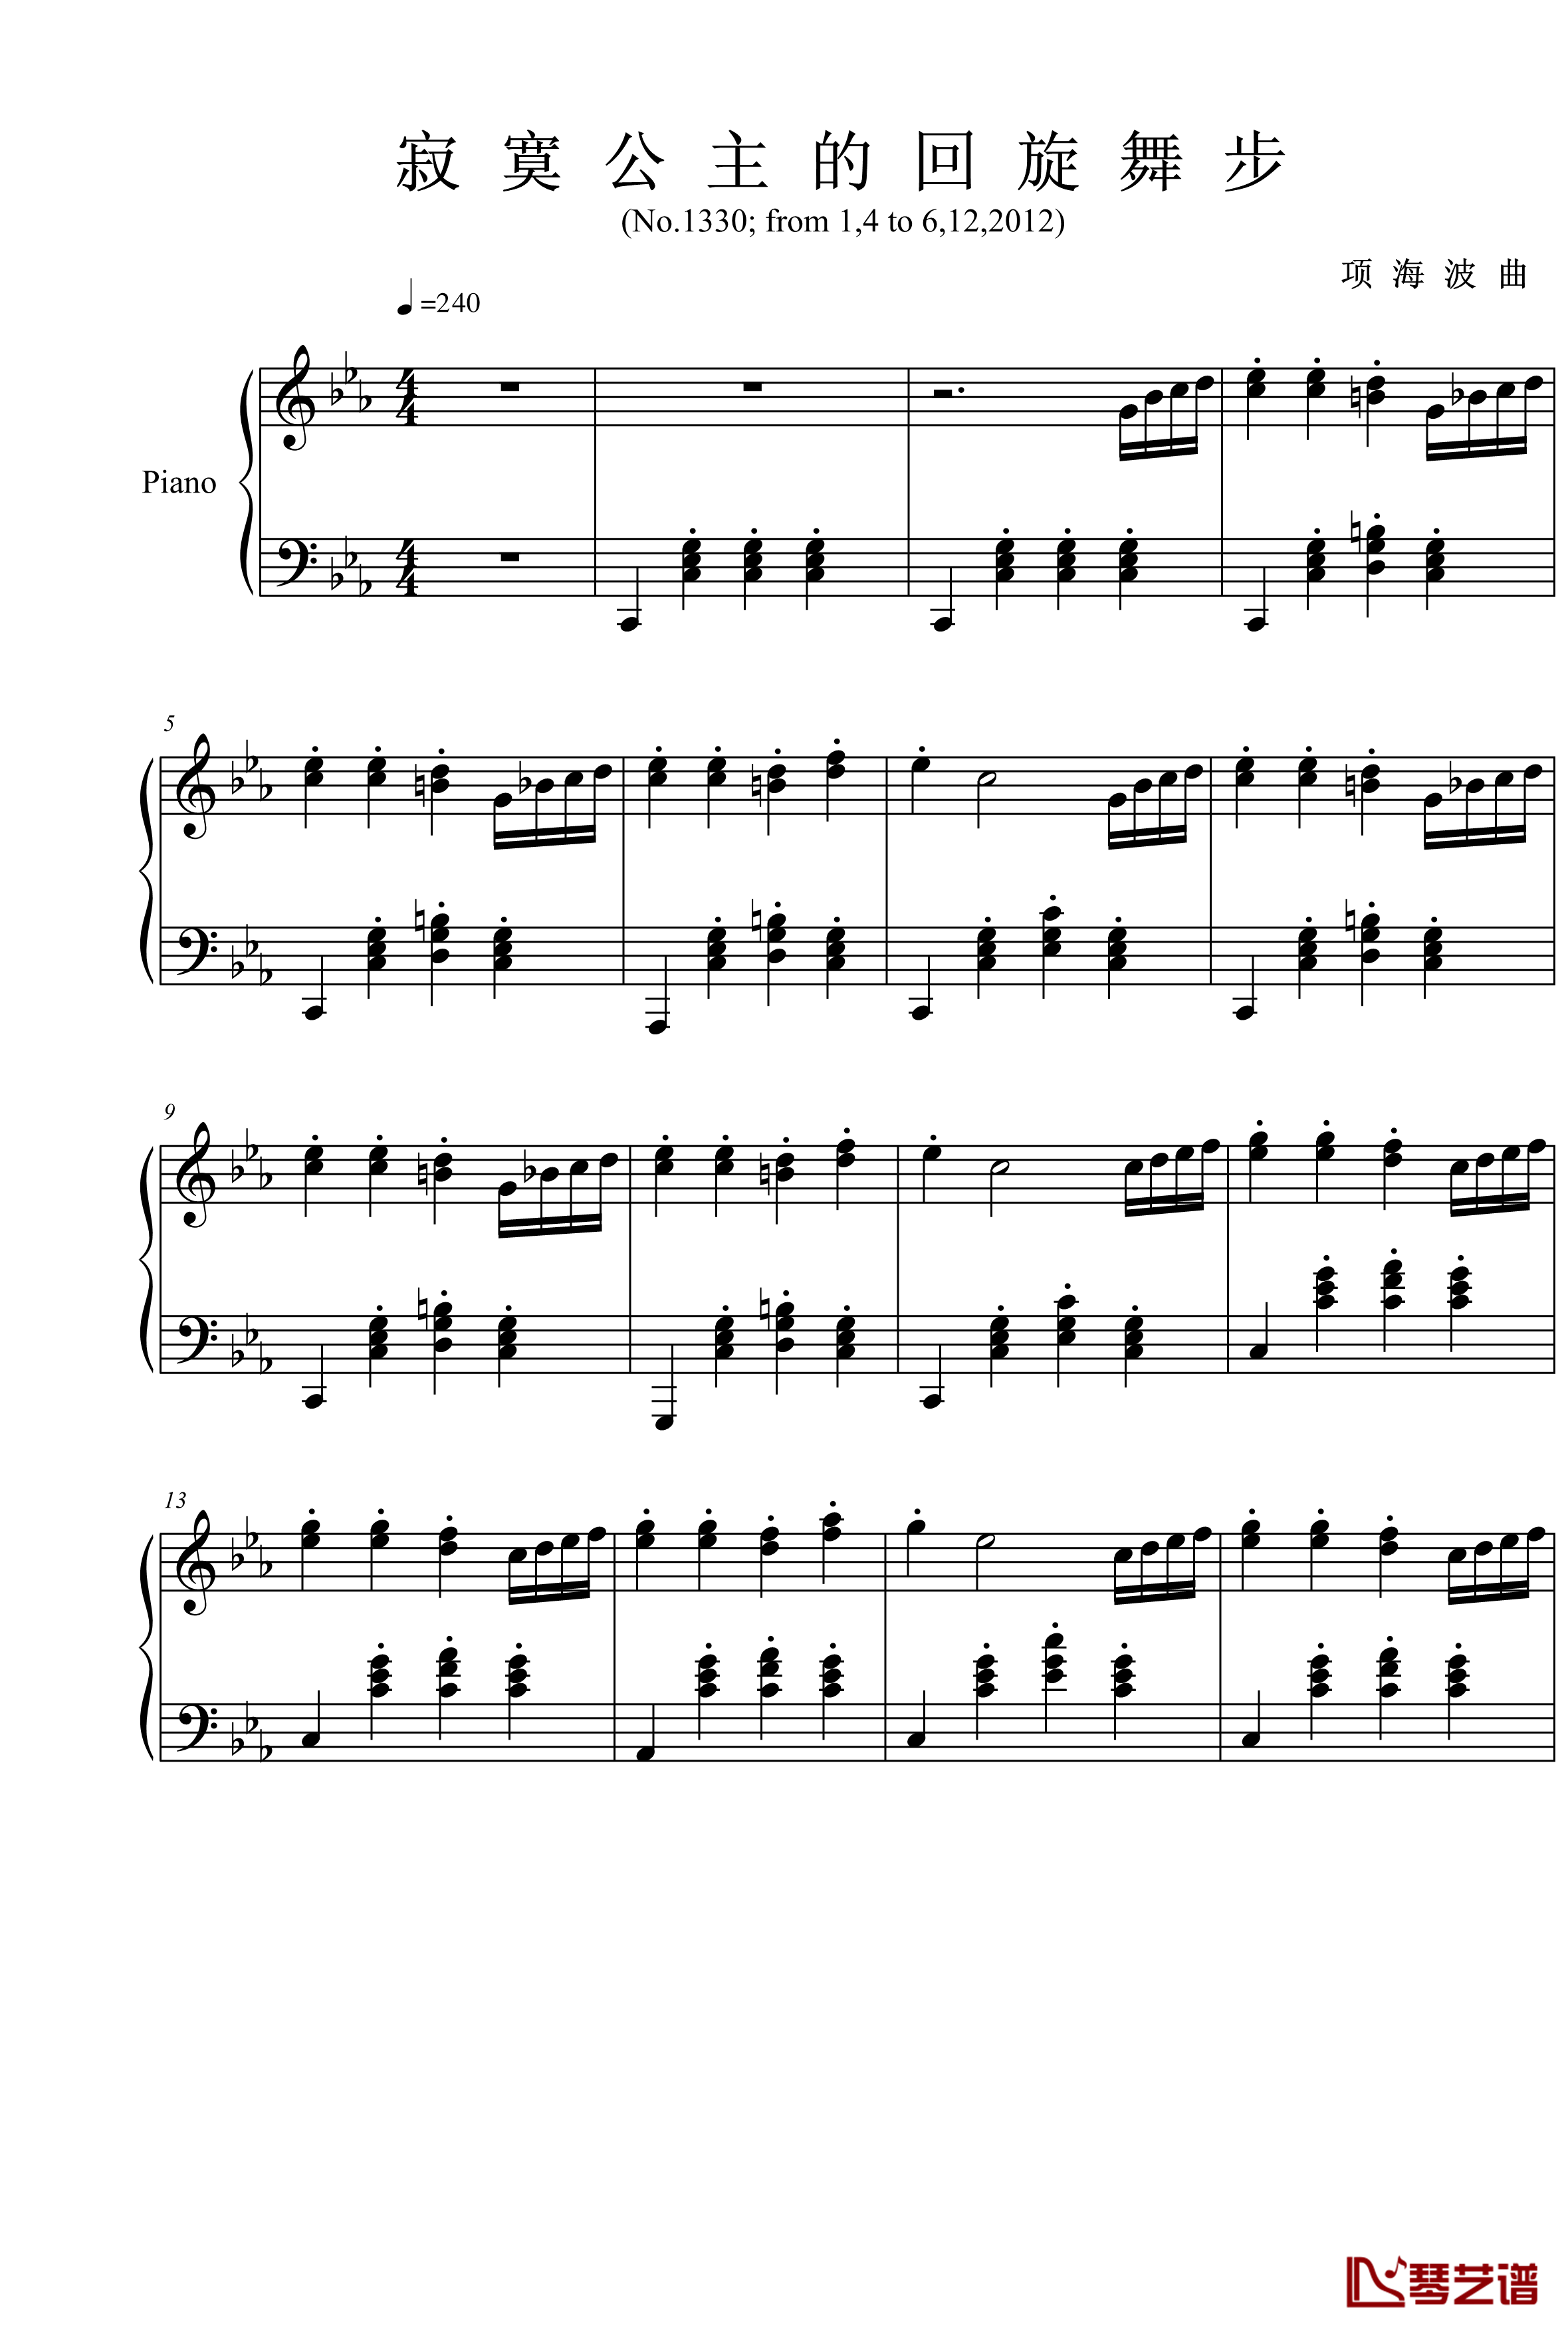 公主奏鸣曲第三乐章钢琴谱-舞步-项海波1